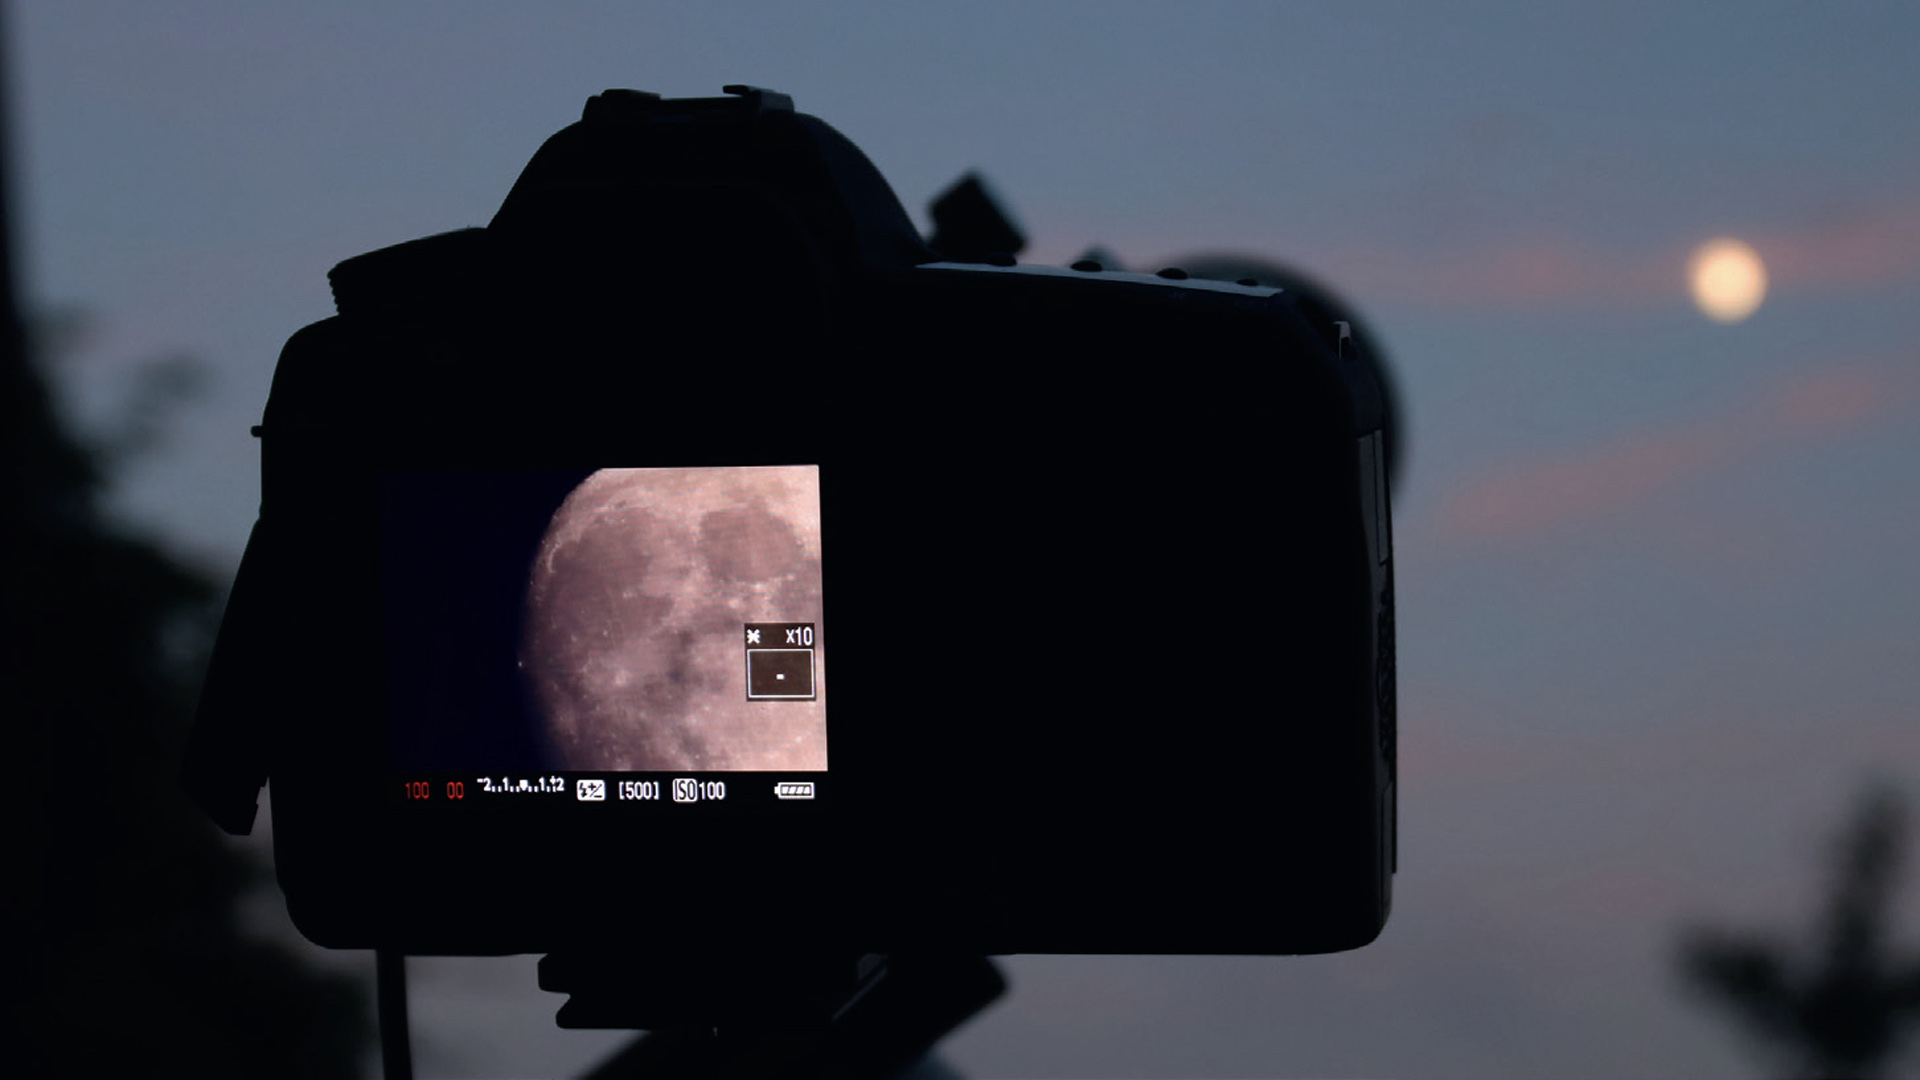 Photographie de la Lune, avec un reflex numérique connecté au télescope. La mise au point de la Lune s’effectue par Live View sur l’écran de l’appareil. M. Weigand